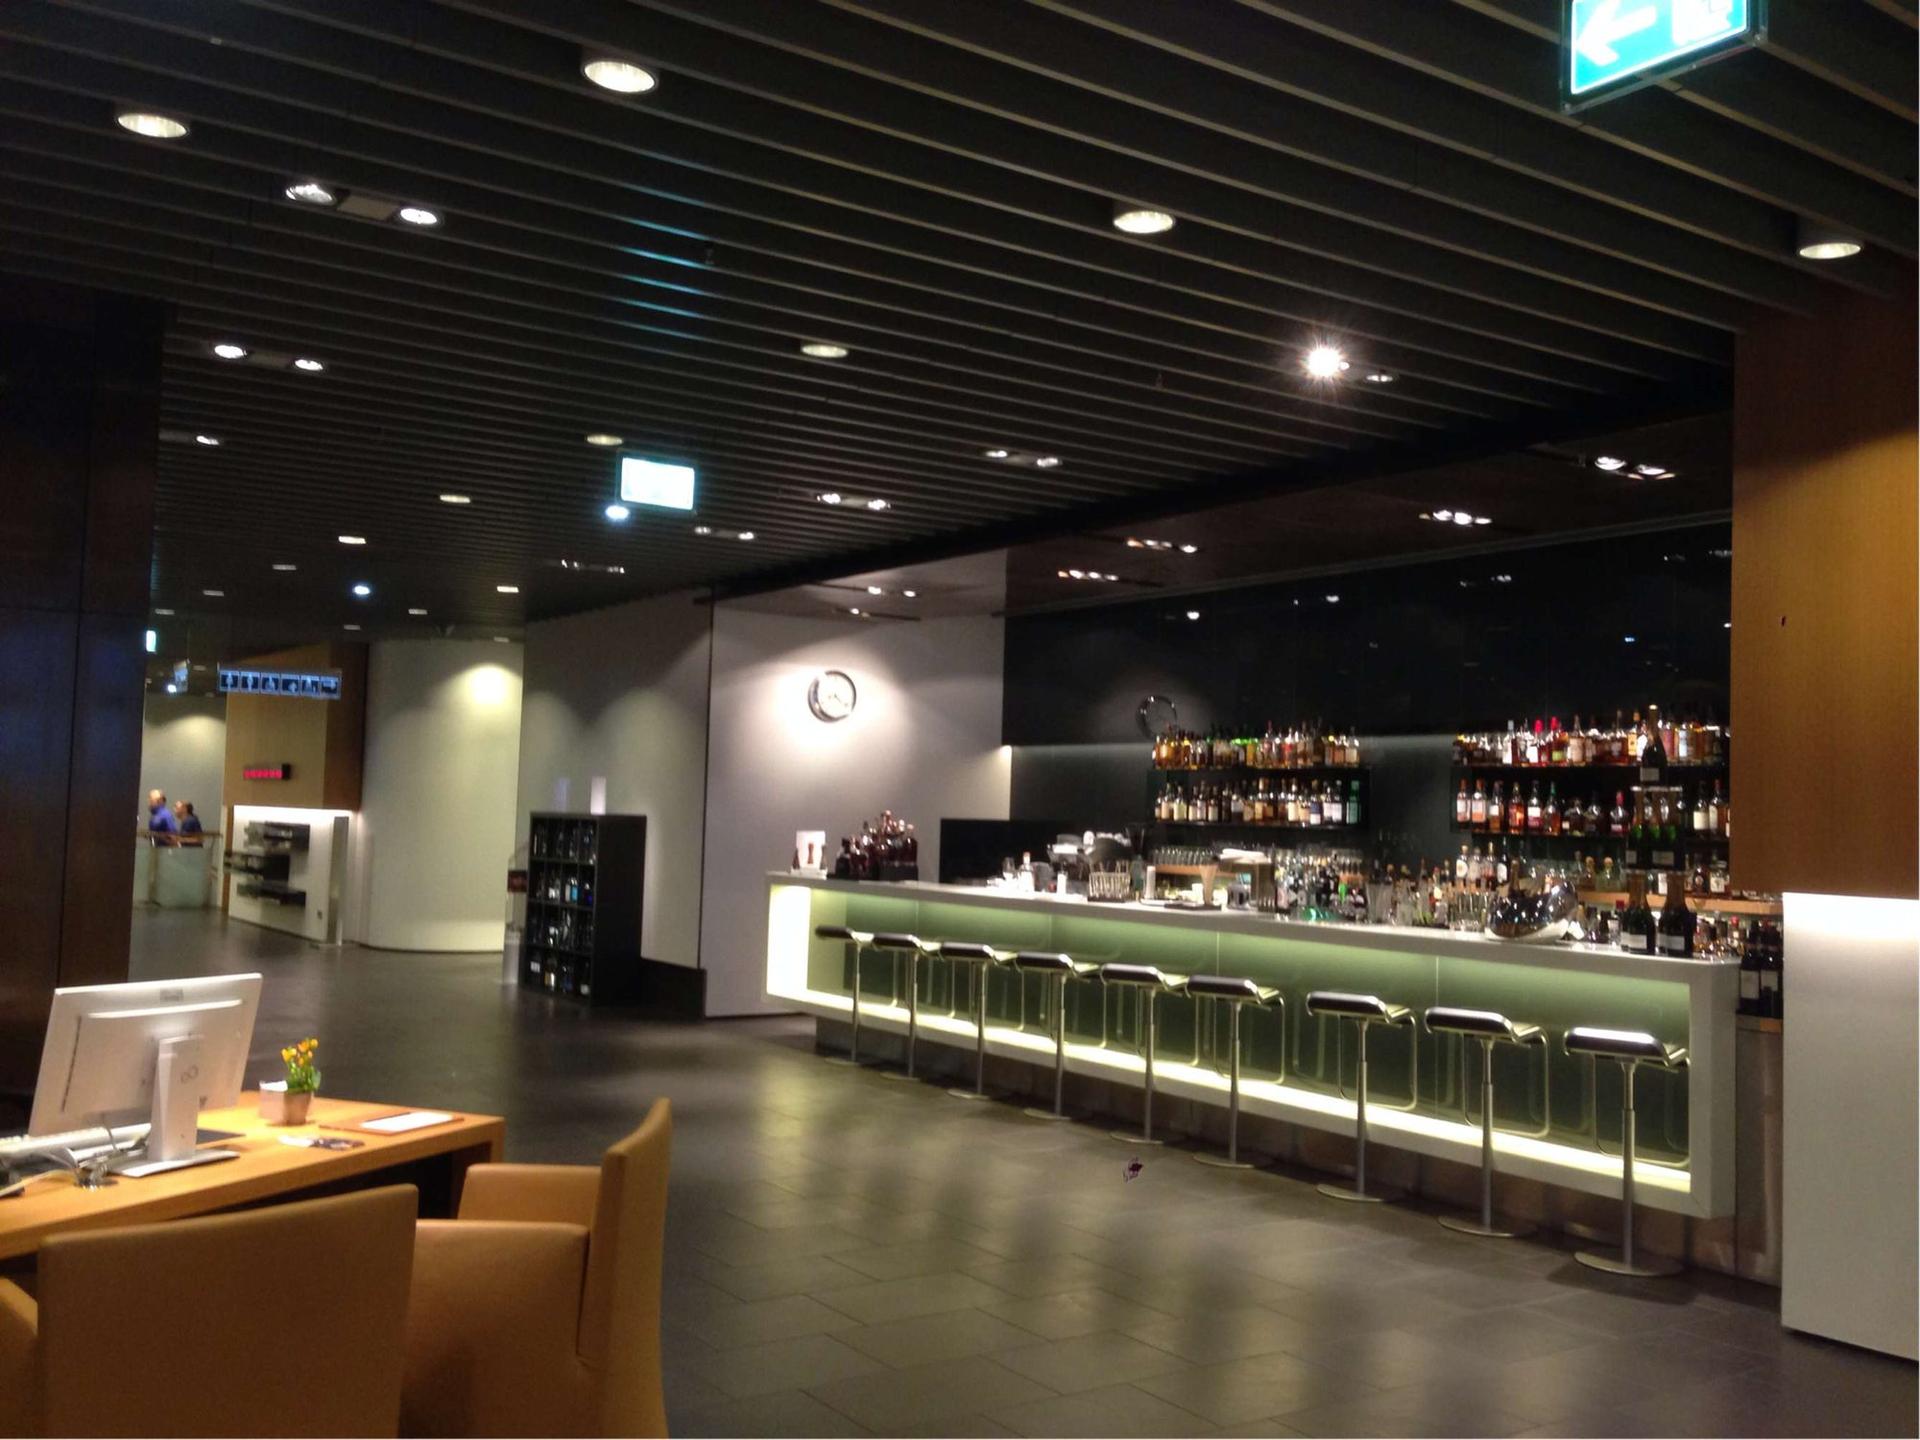 Lufthansa First Class Lounge (Schengen) image 9 of 12